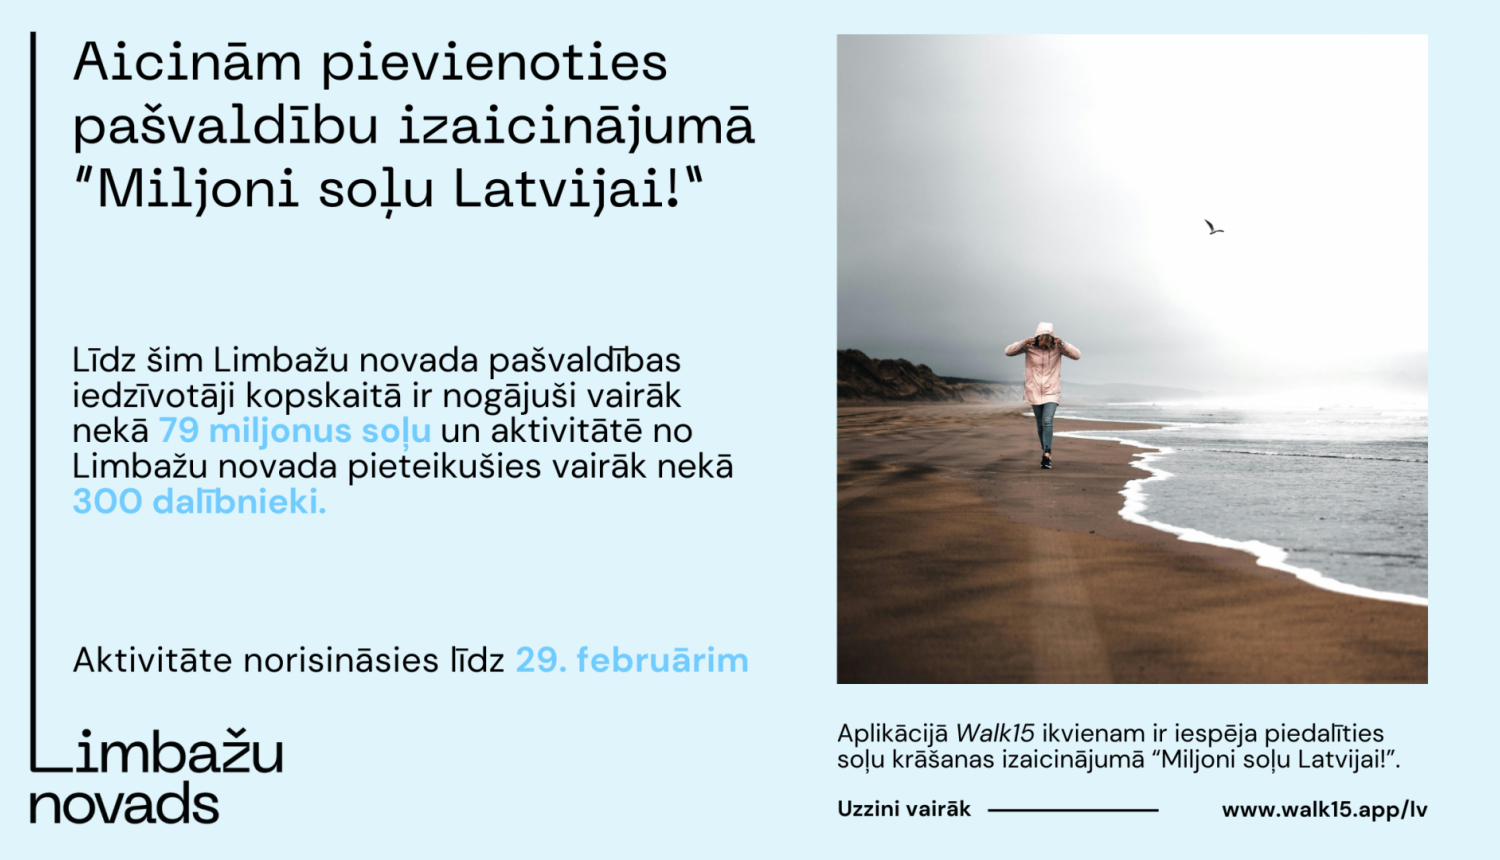 Aicinām pievienoties pašvaldību izaicinājumā "Miljoni soļu Latvijai!"